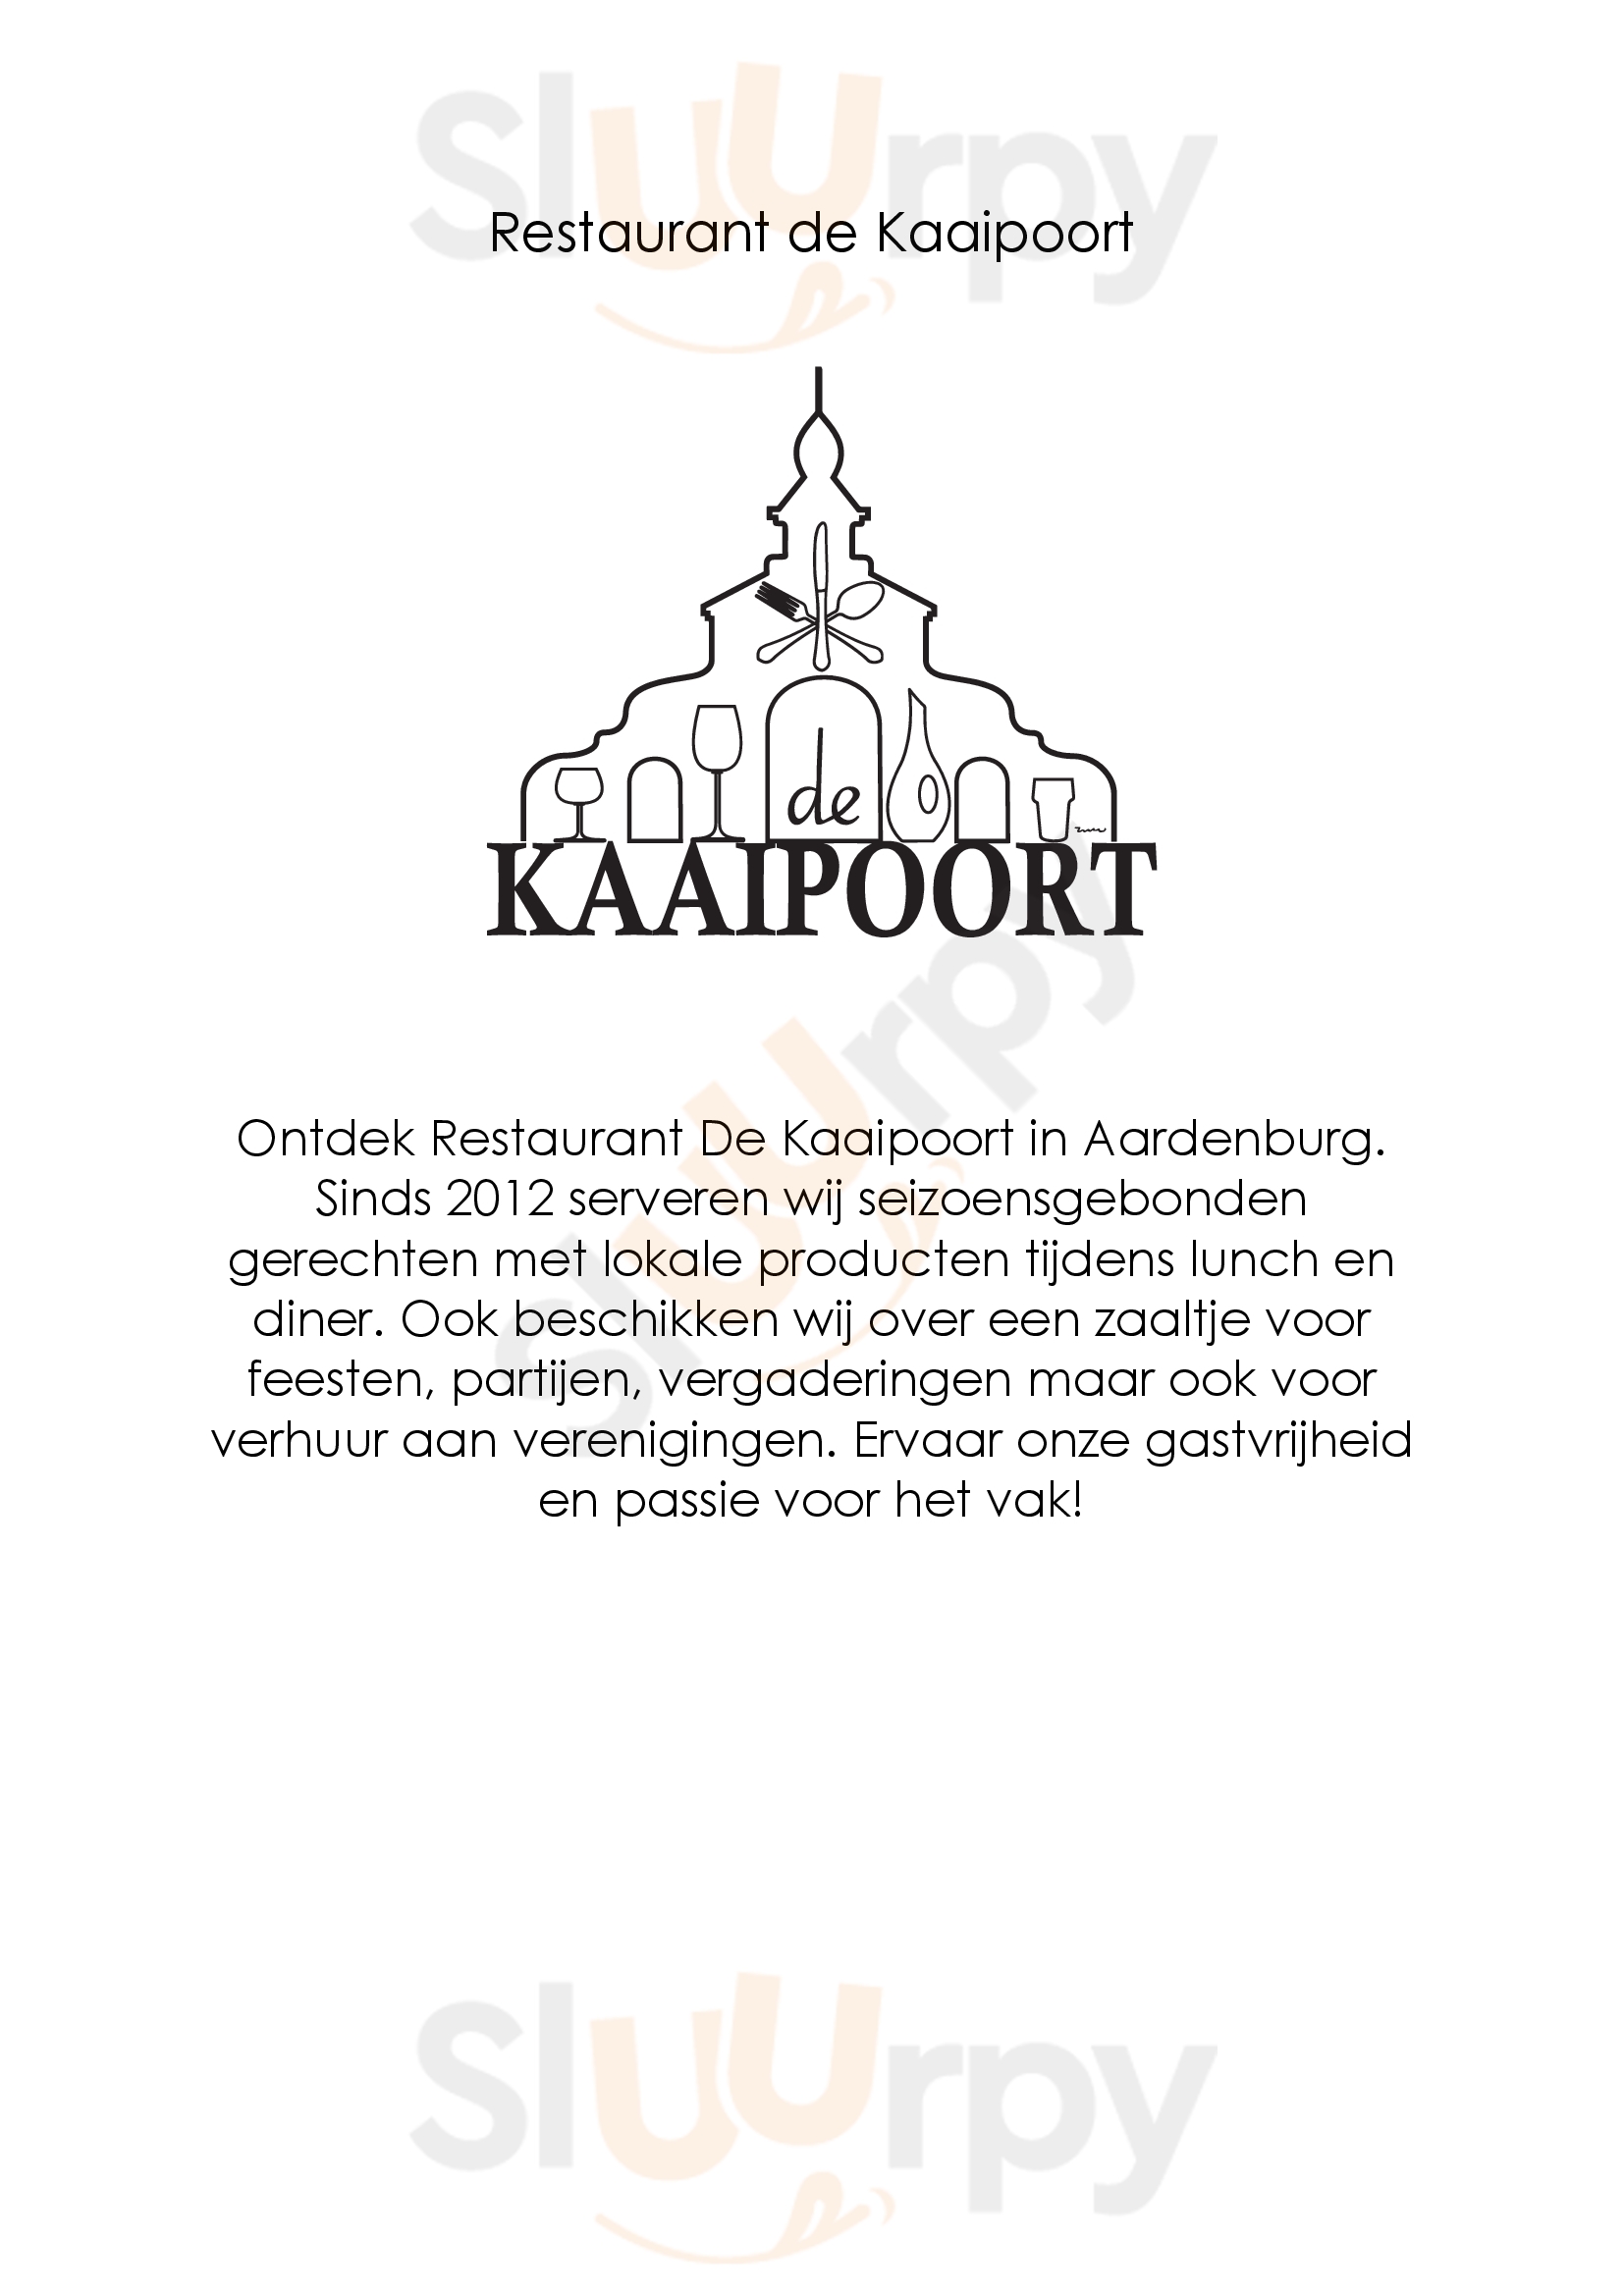 Restaurant De Kaaipoort Aardenburg Menu - 1